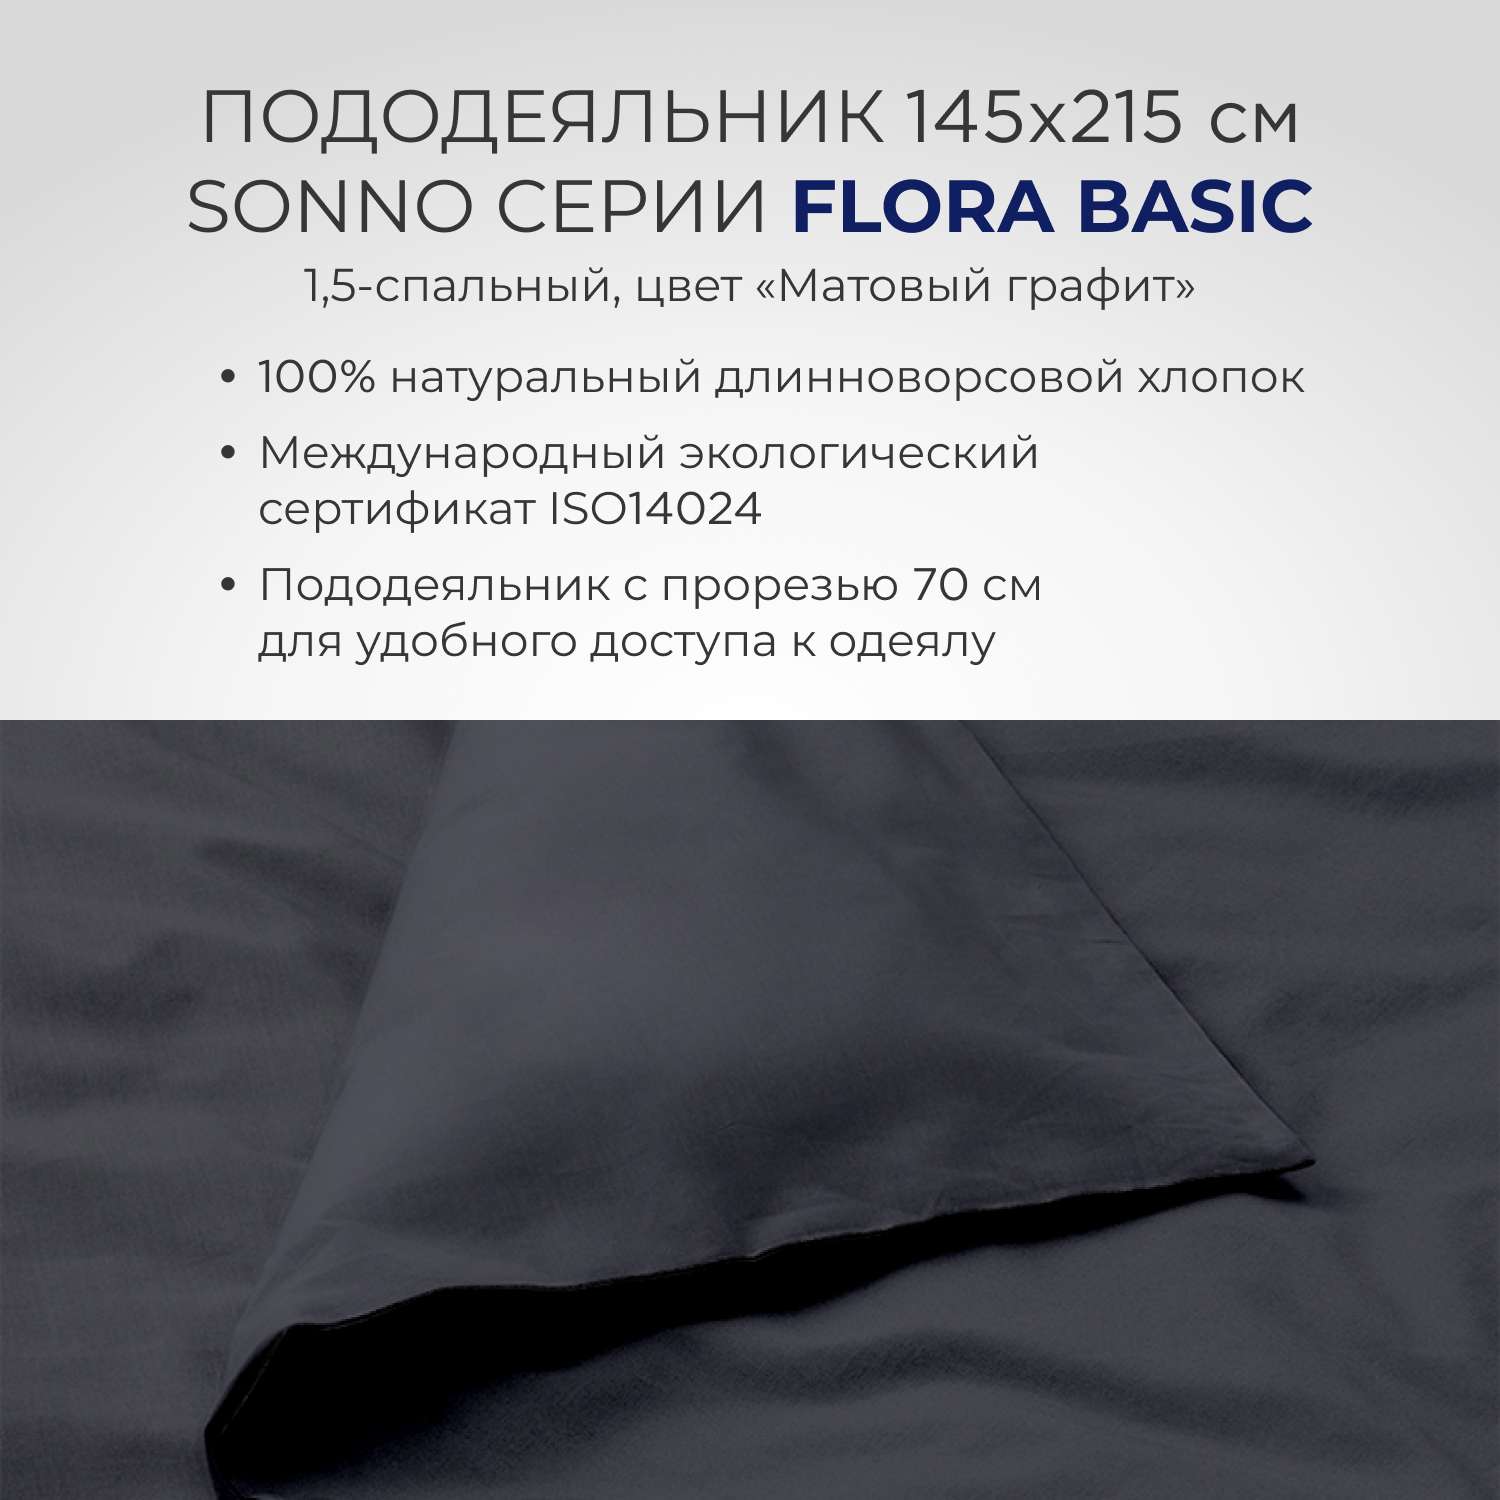 Комплект постельного белья SONNO FLORA BASIC 1.5-спальный цвет Матовый графит - фото 5